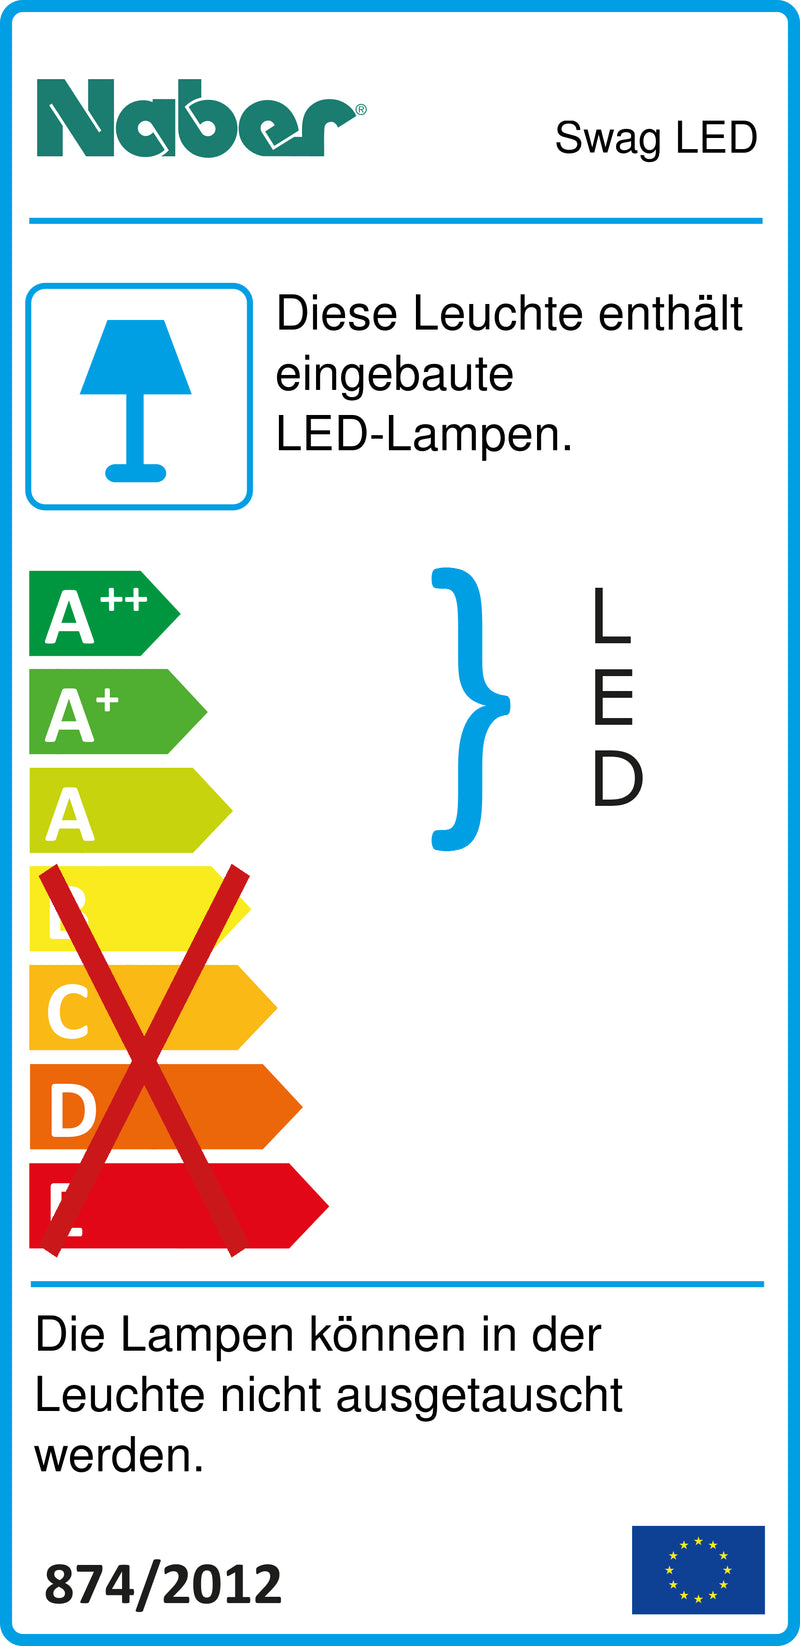 E-Label zu Zeichnung zu Swag LED als Variante Set-5, 3000 K warmweiß von Naber GmbH in der Kategorie Lichttechnik in Österreich auf conceptshop.at